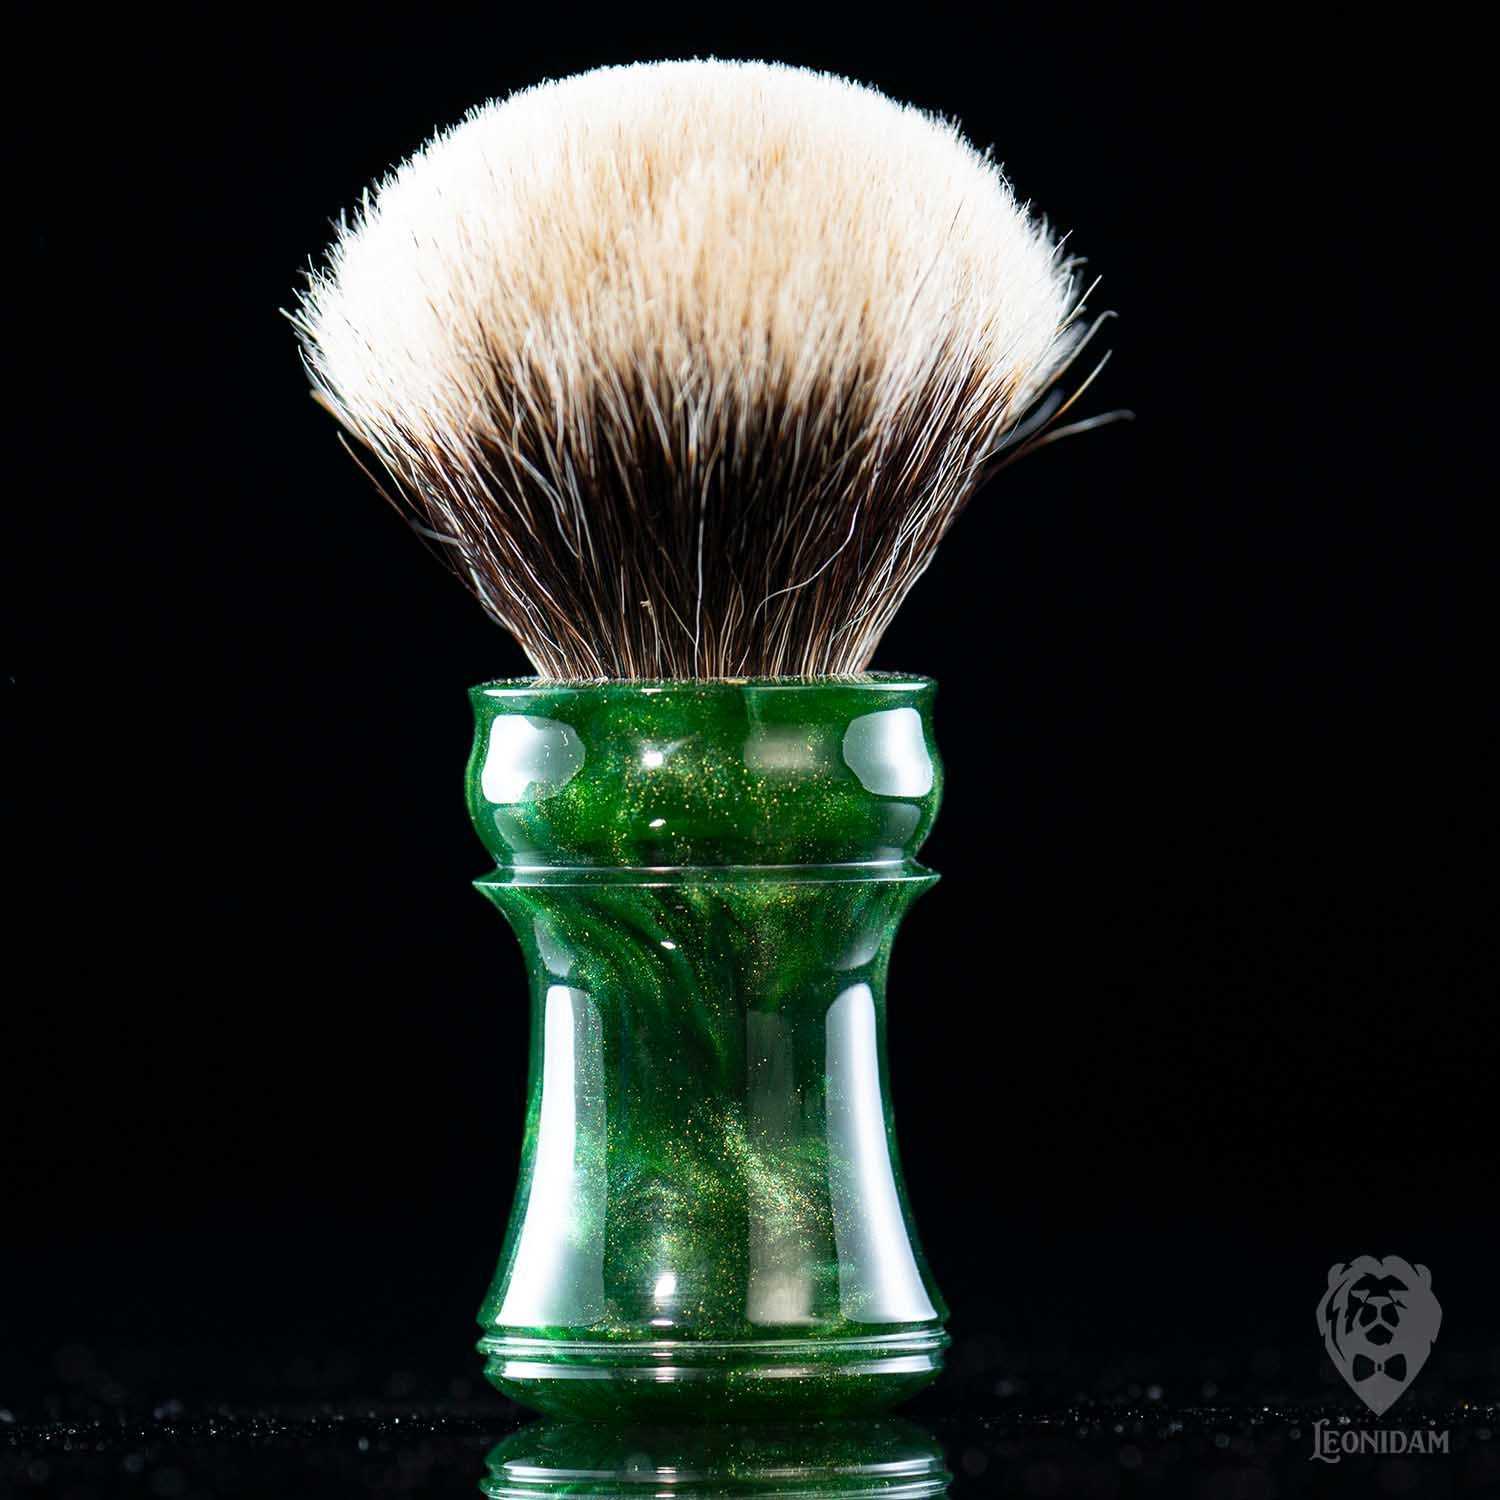 Handmade Shaving Brush "Verdelite" in polished green and gold resin